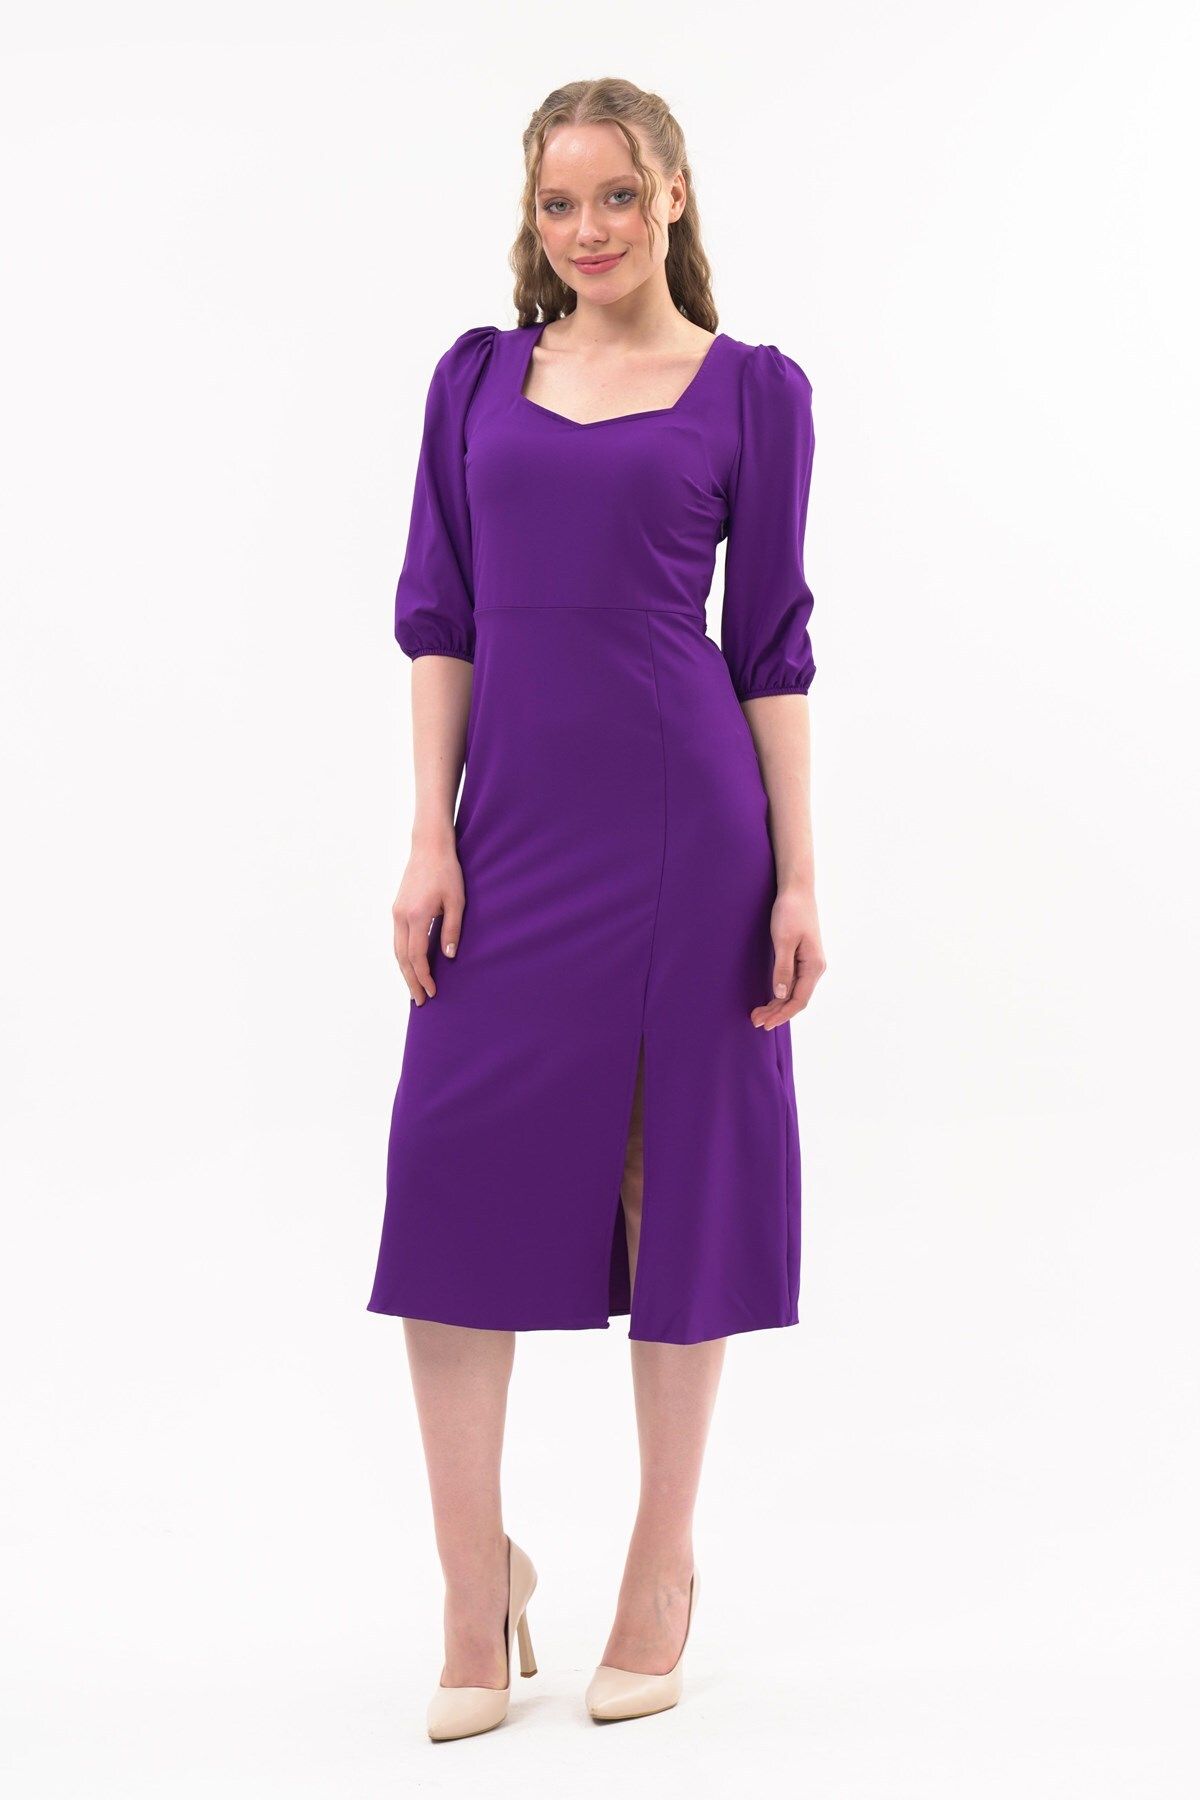 apsen Kadın Yırtmaç Detaylı Beşgen Yaka Midi Krep Elbise 4444/120